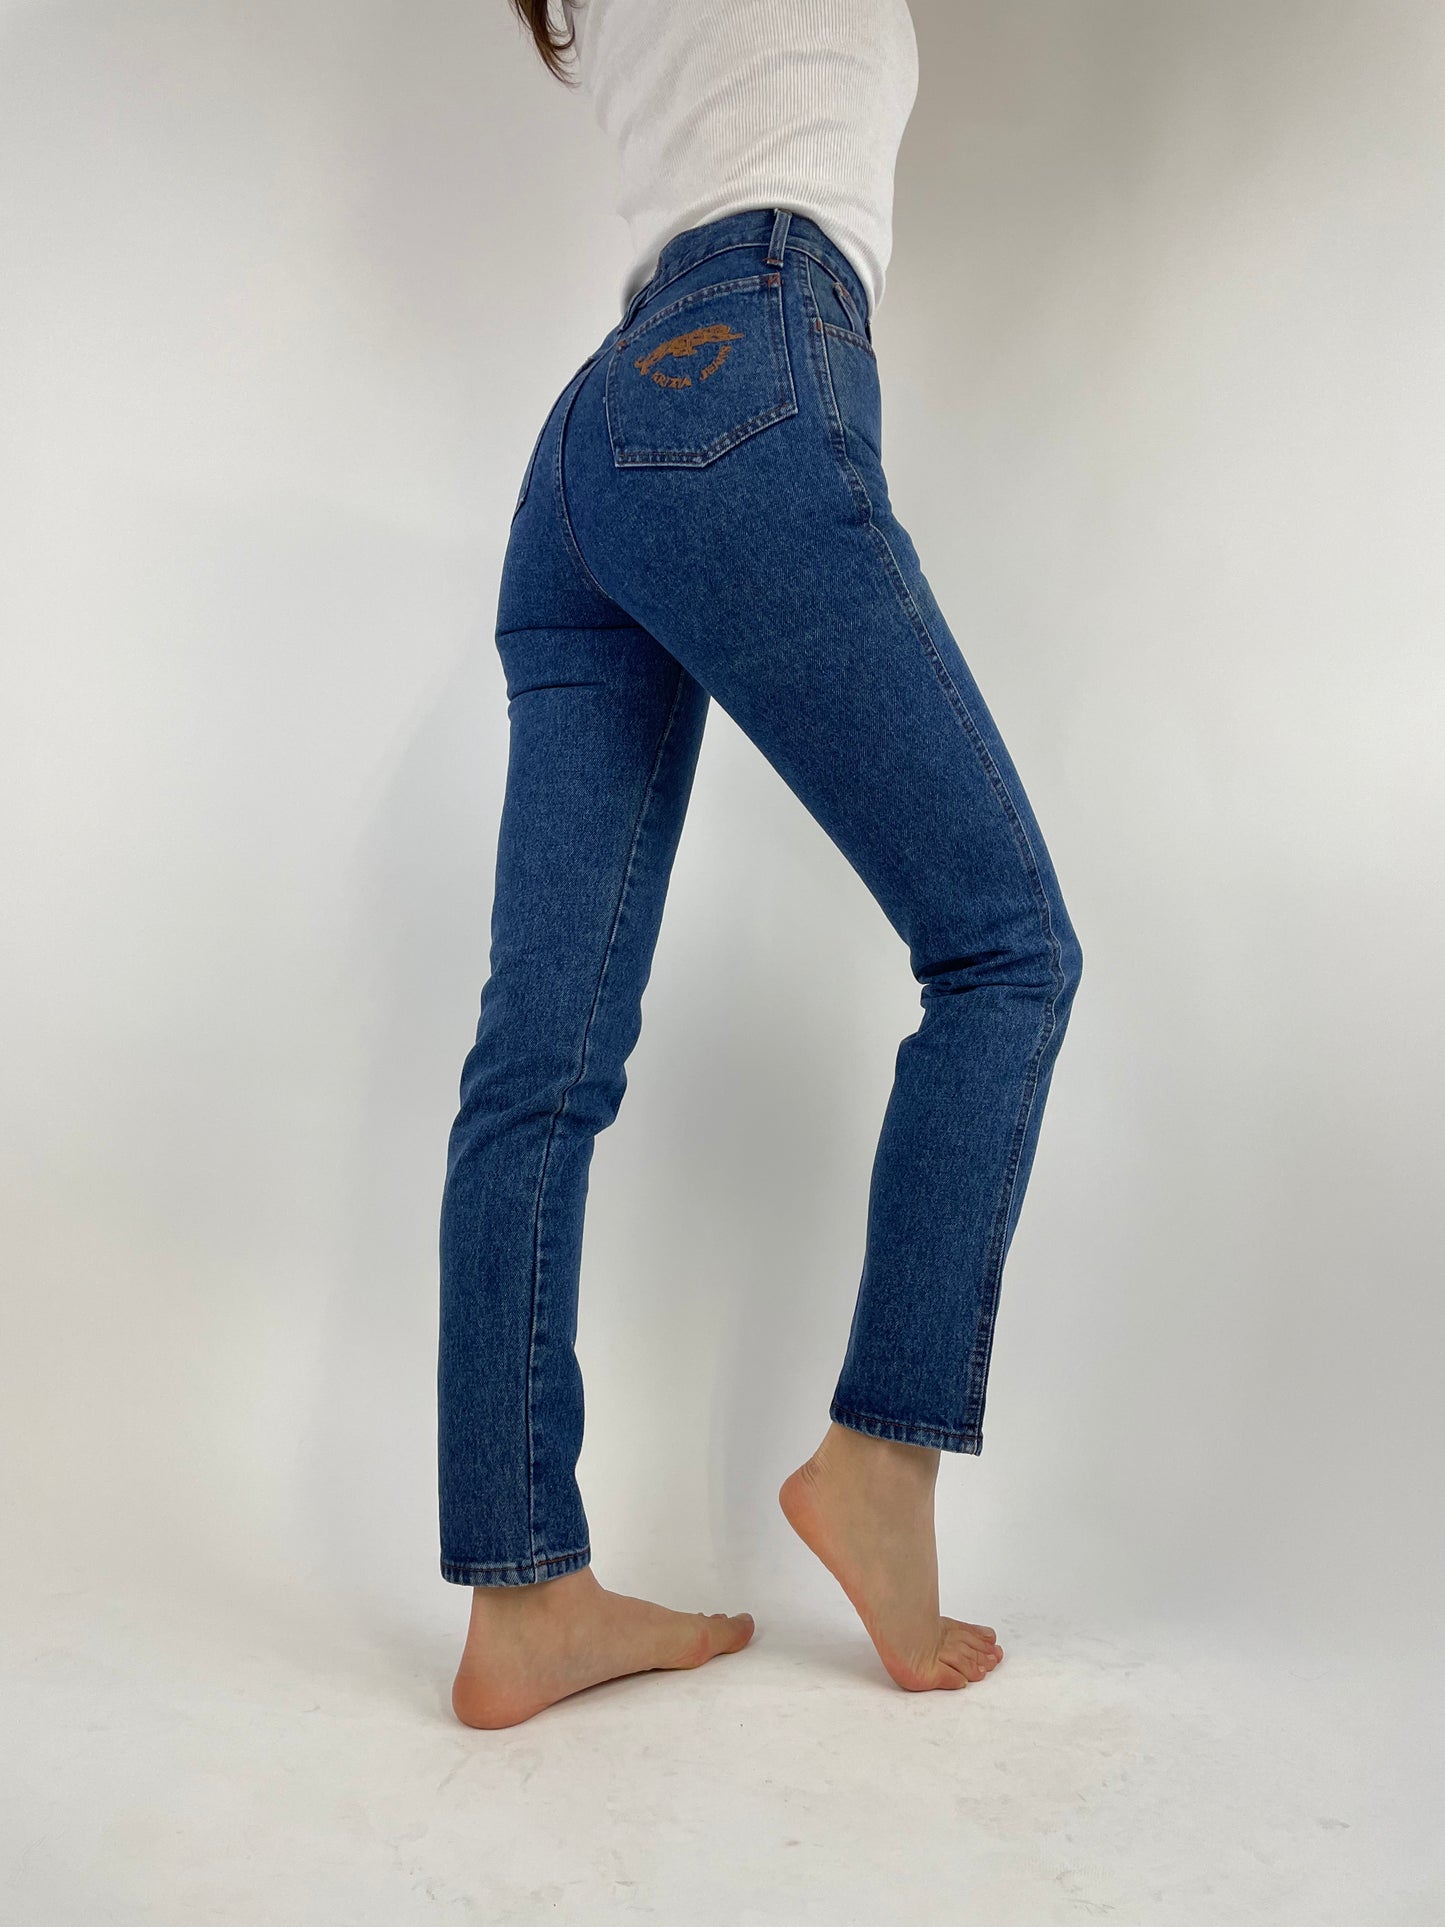 Krizia jeans 1980s